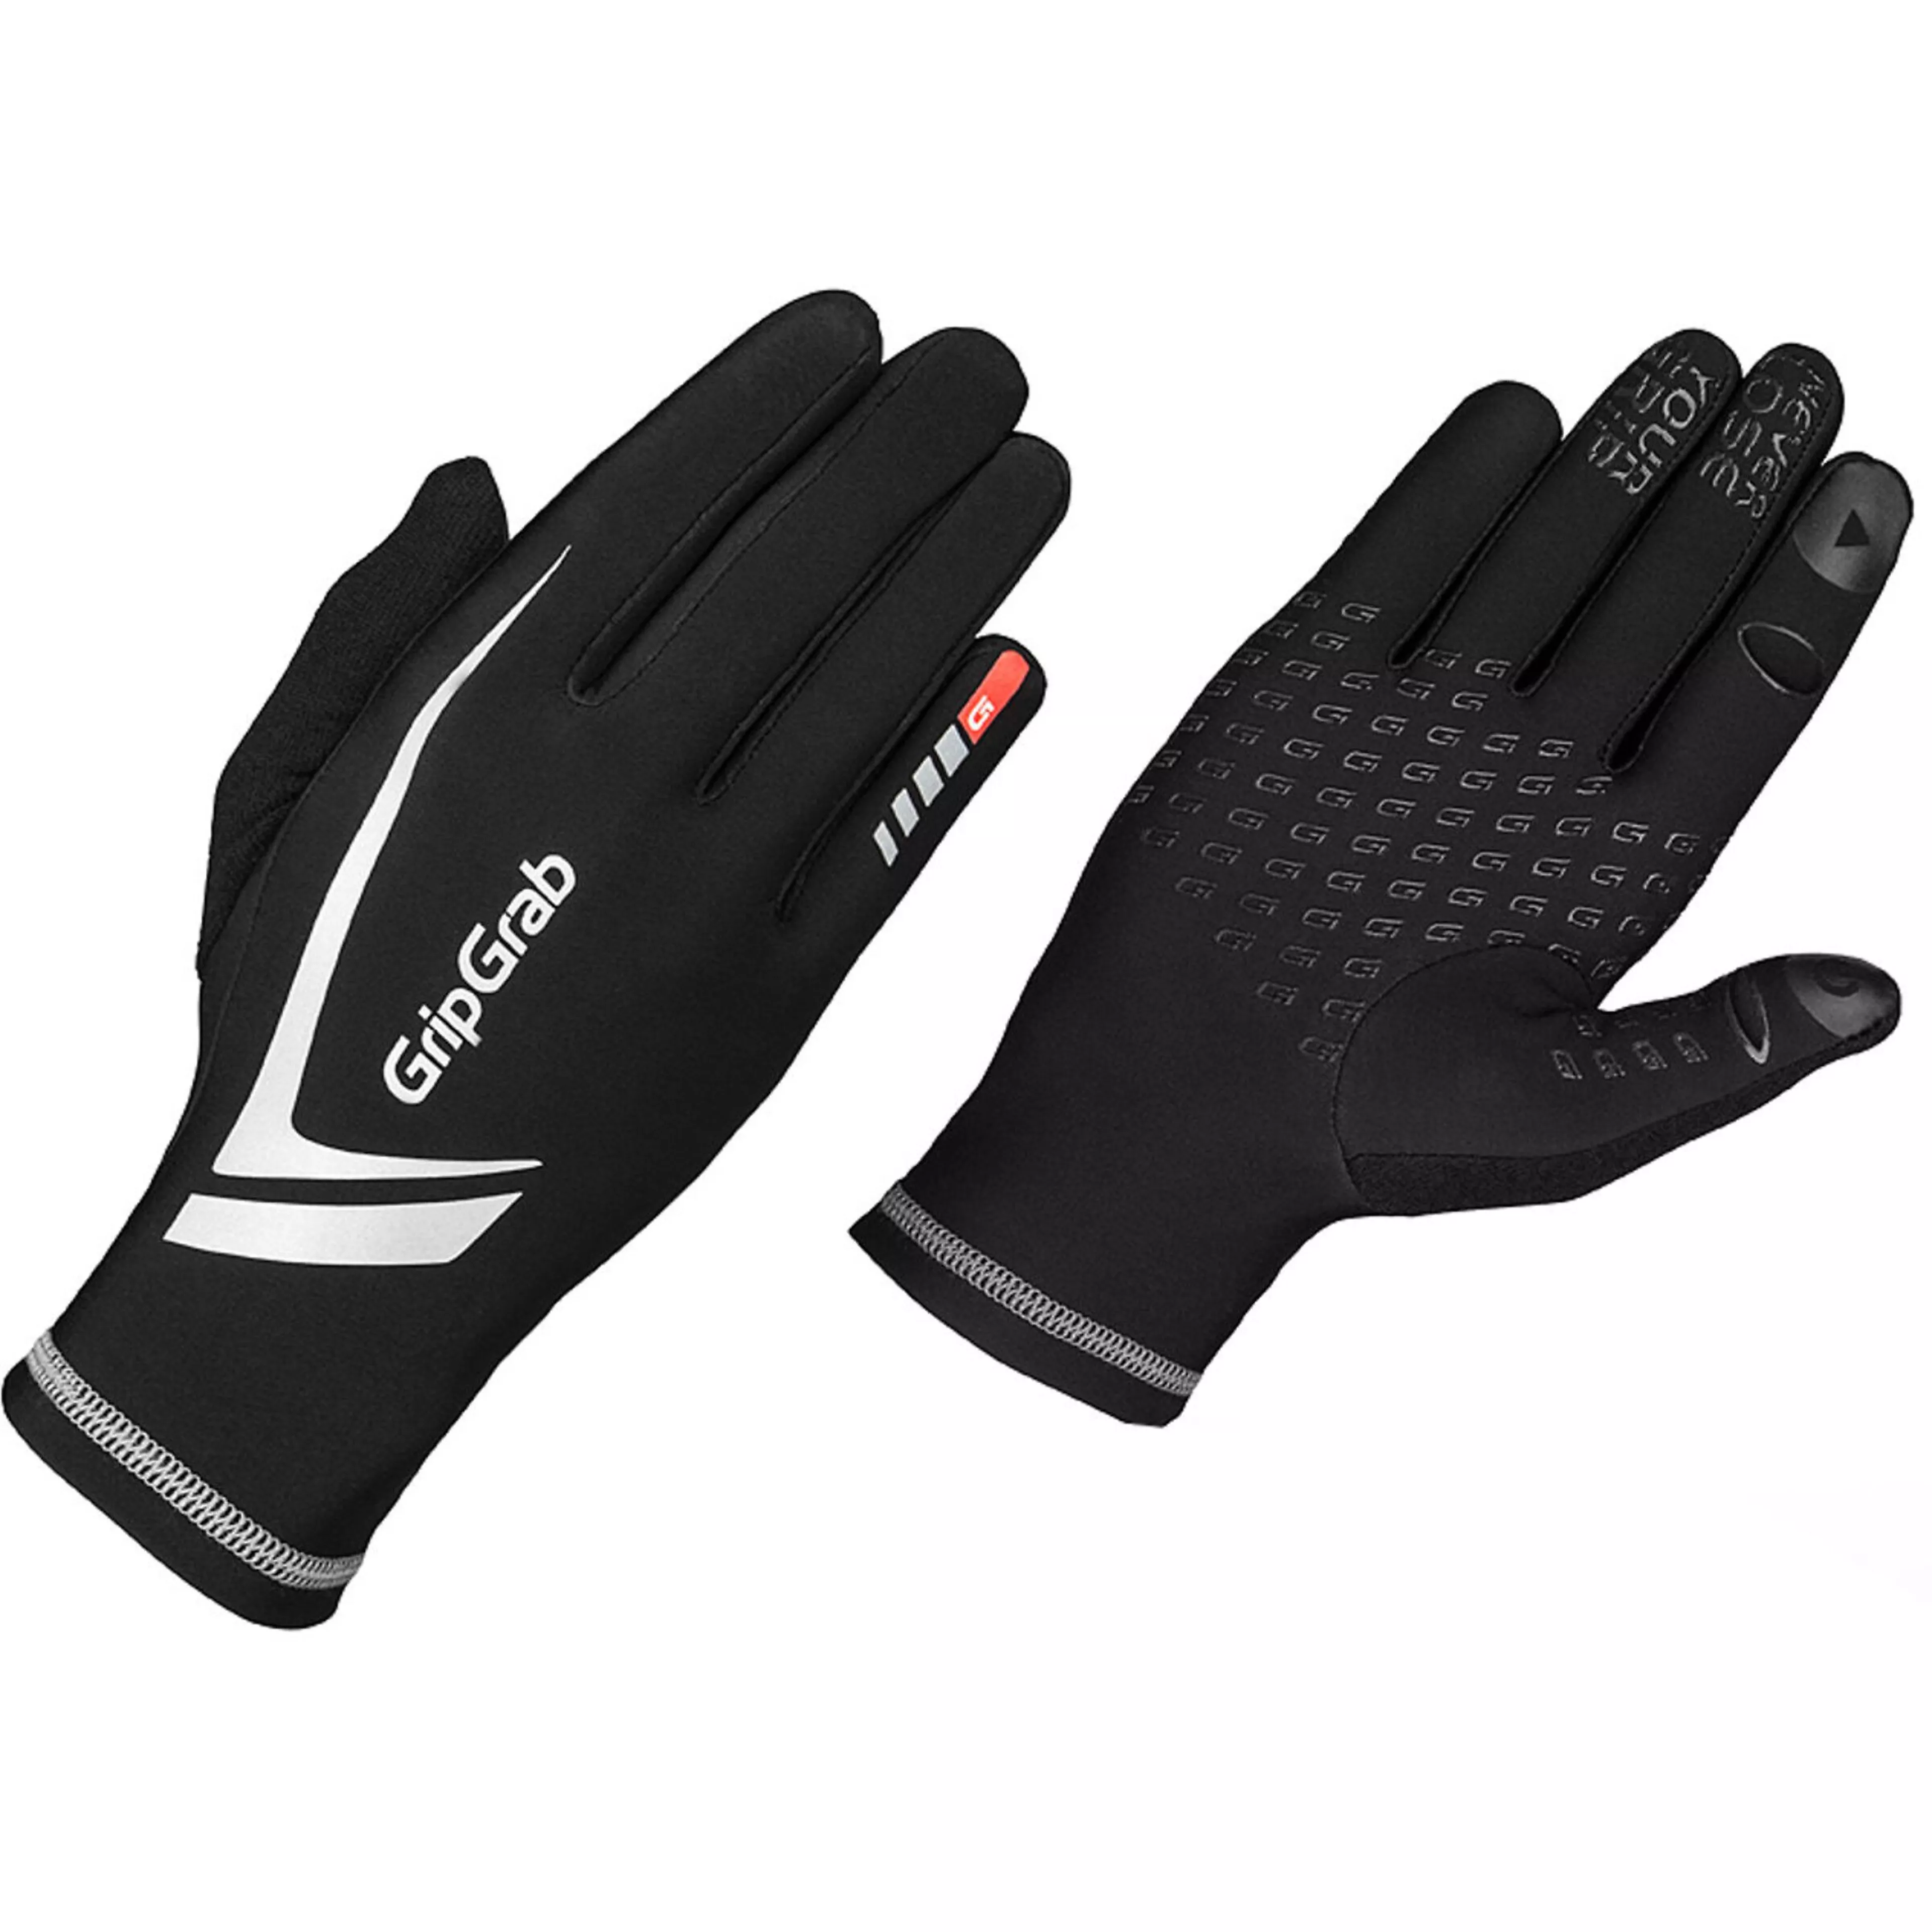 Hanske Running Expert Winter Touchscreen Glove